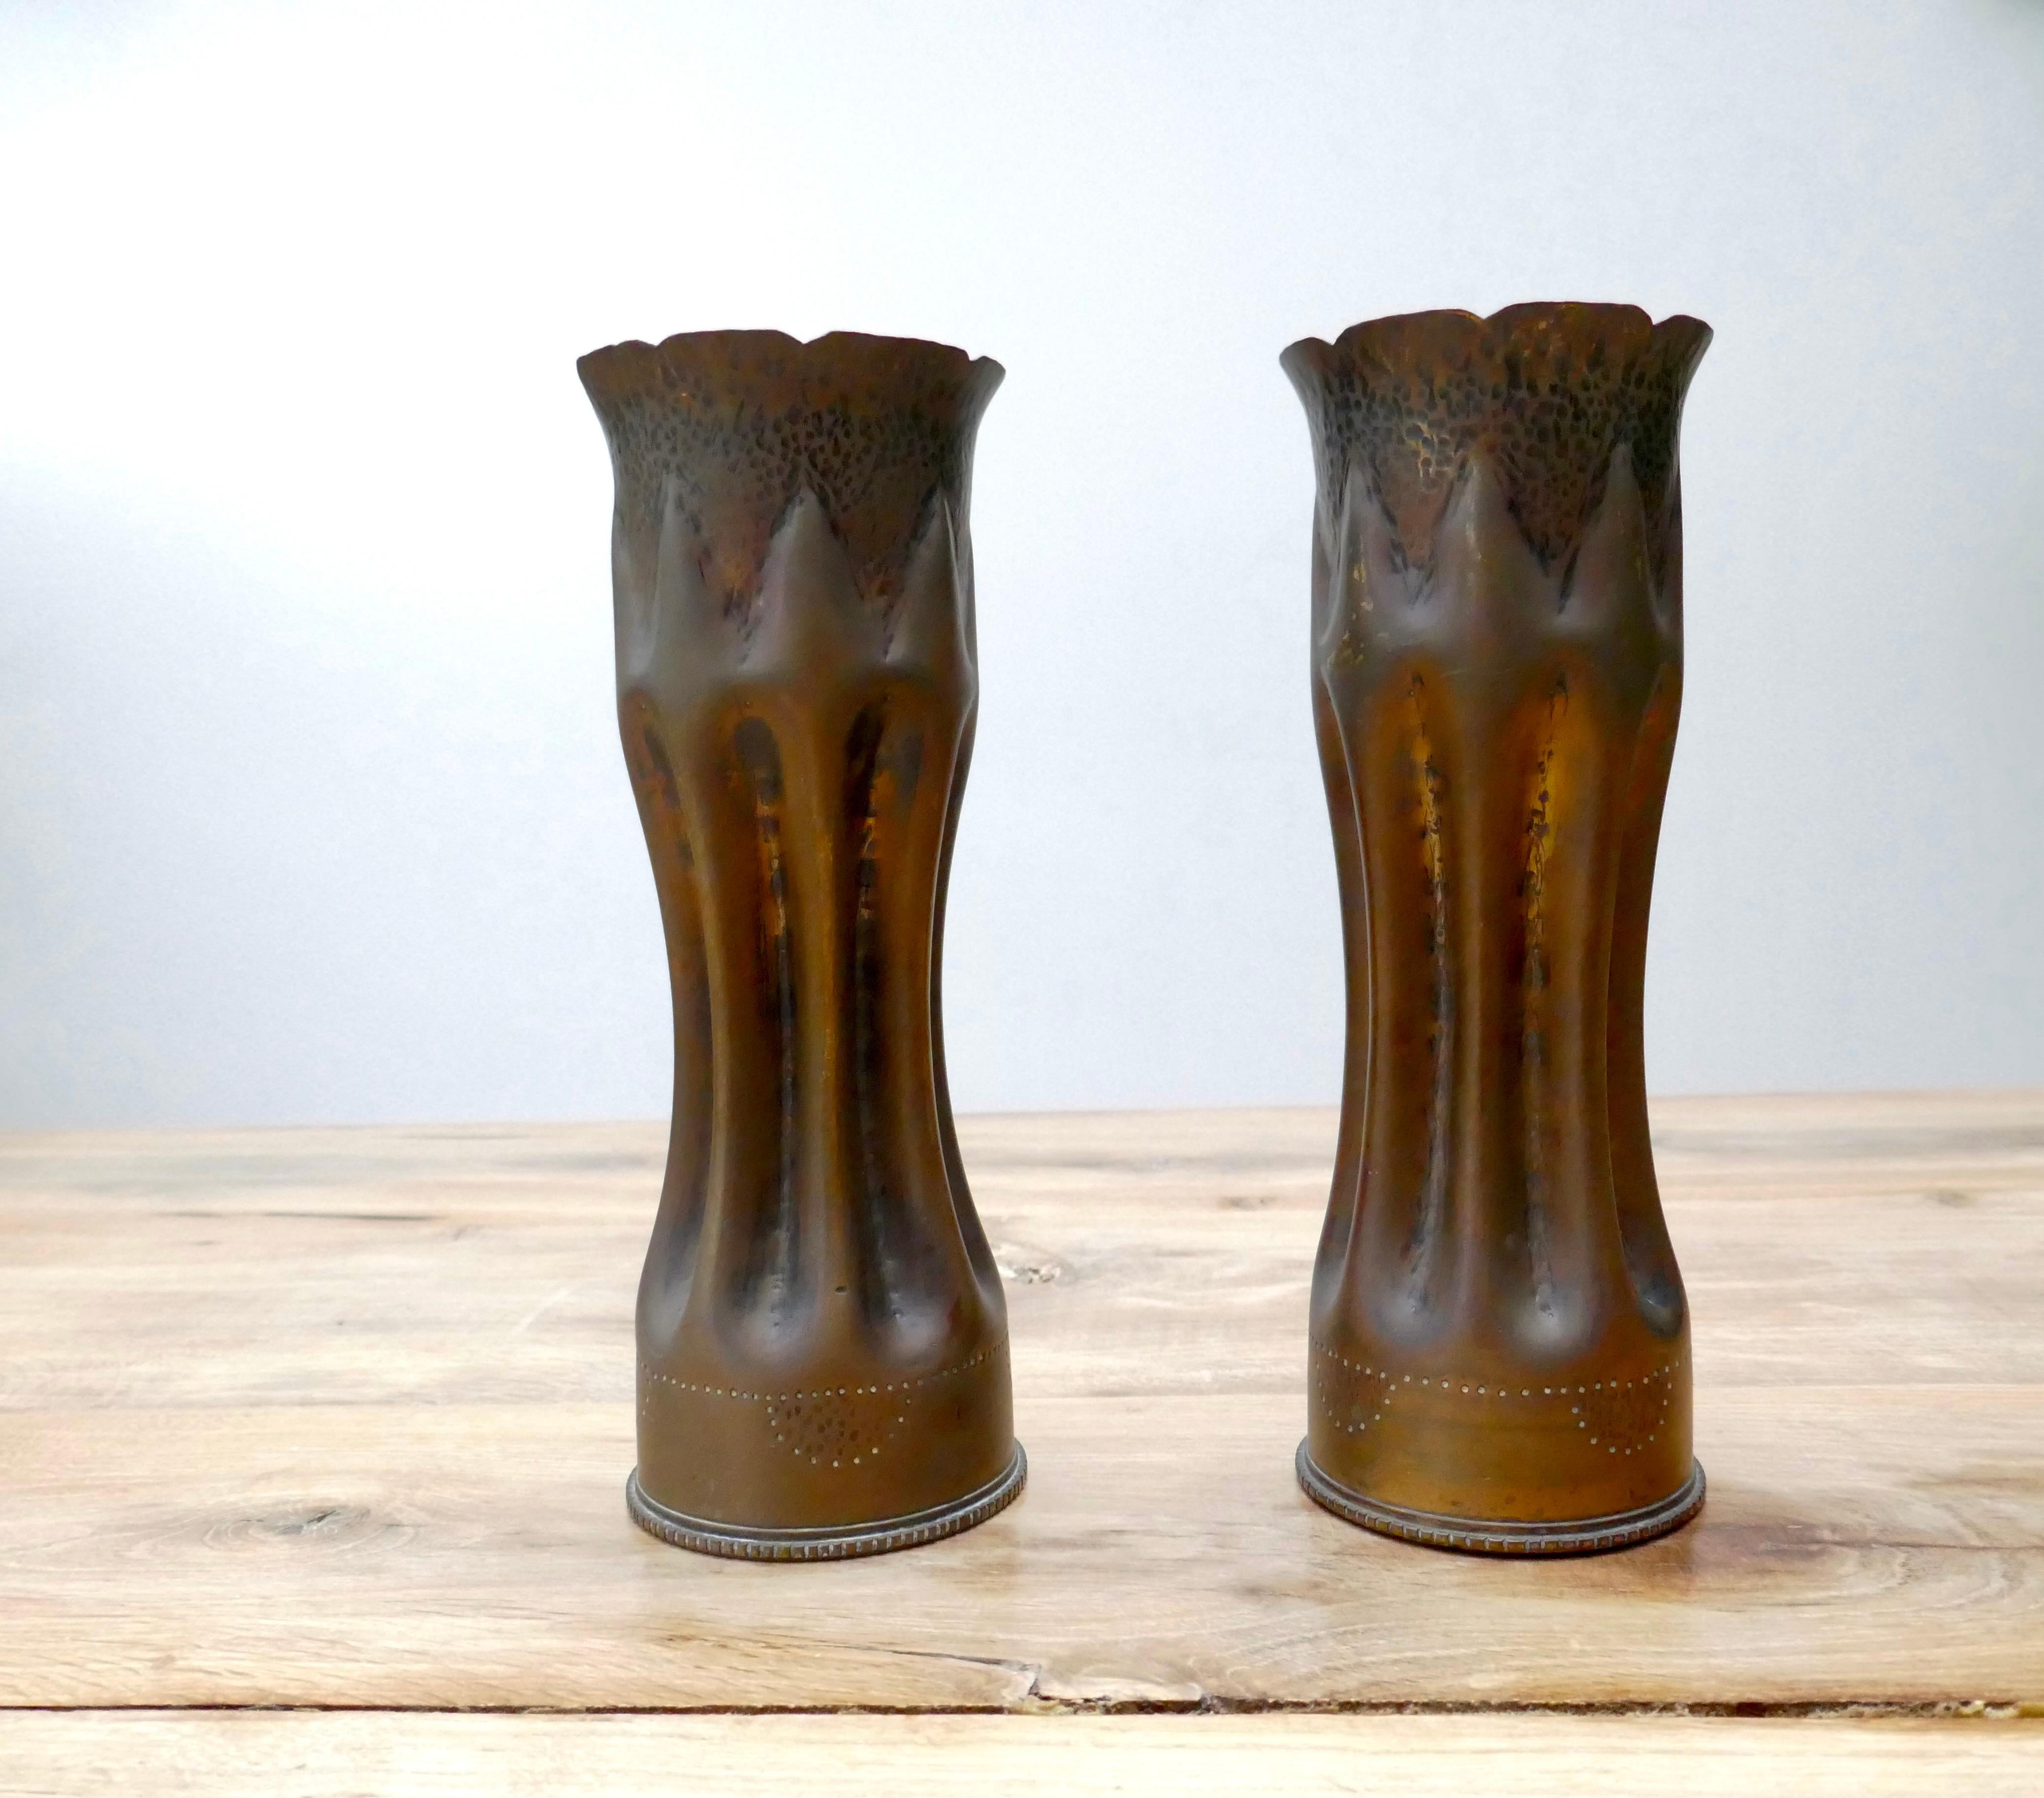 Paire de vases français d'art des tranchées / douilles d'obus des vases de la Première Guerre mondiale.

Les objets d'art des tranchées sont des supports de la mémoire des soldats et des rappels du conflit auquel ils ont été confrontés. Fabriquées